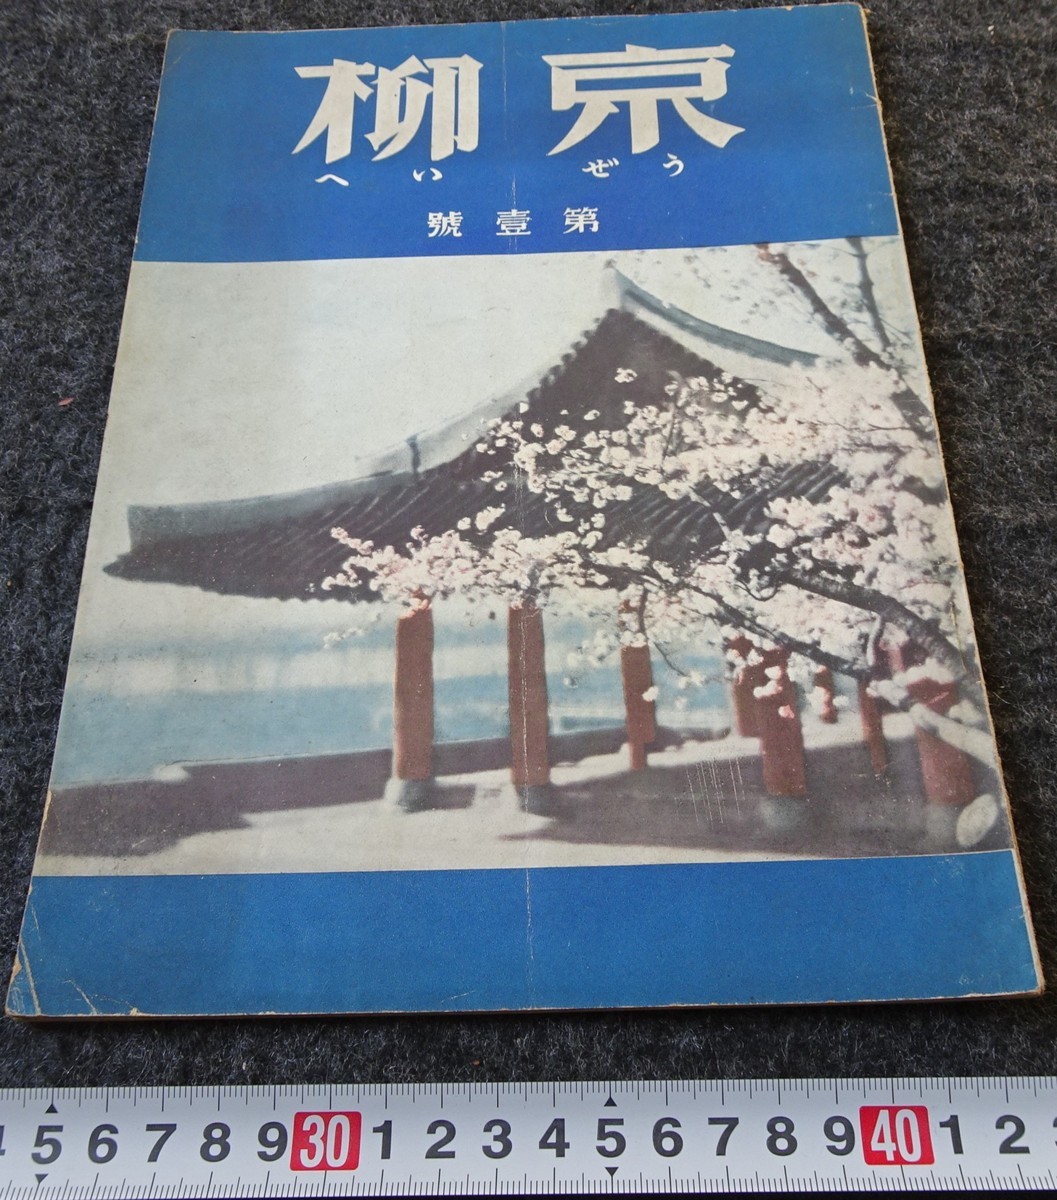 お買い得モデル rarebookkyoto s851 朝鮮 京柳 雑誌 創刊号 1938年 李